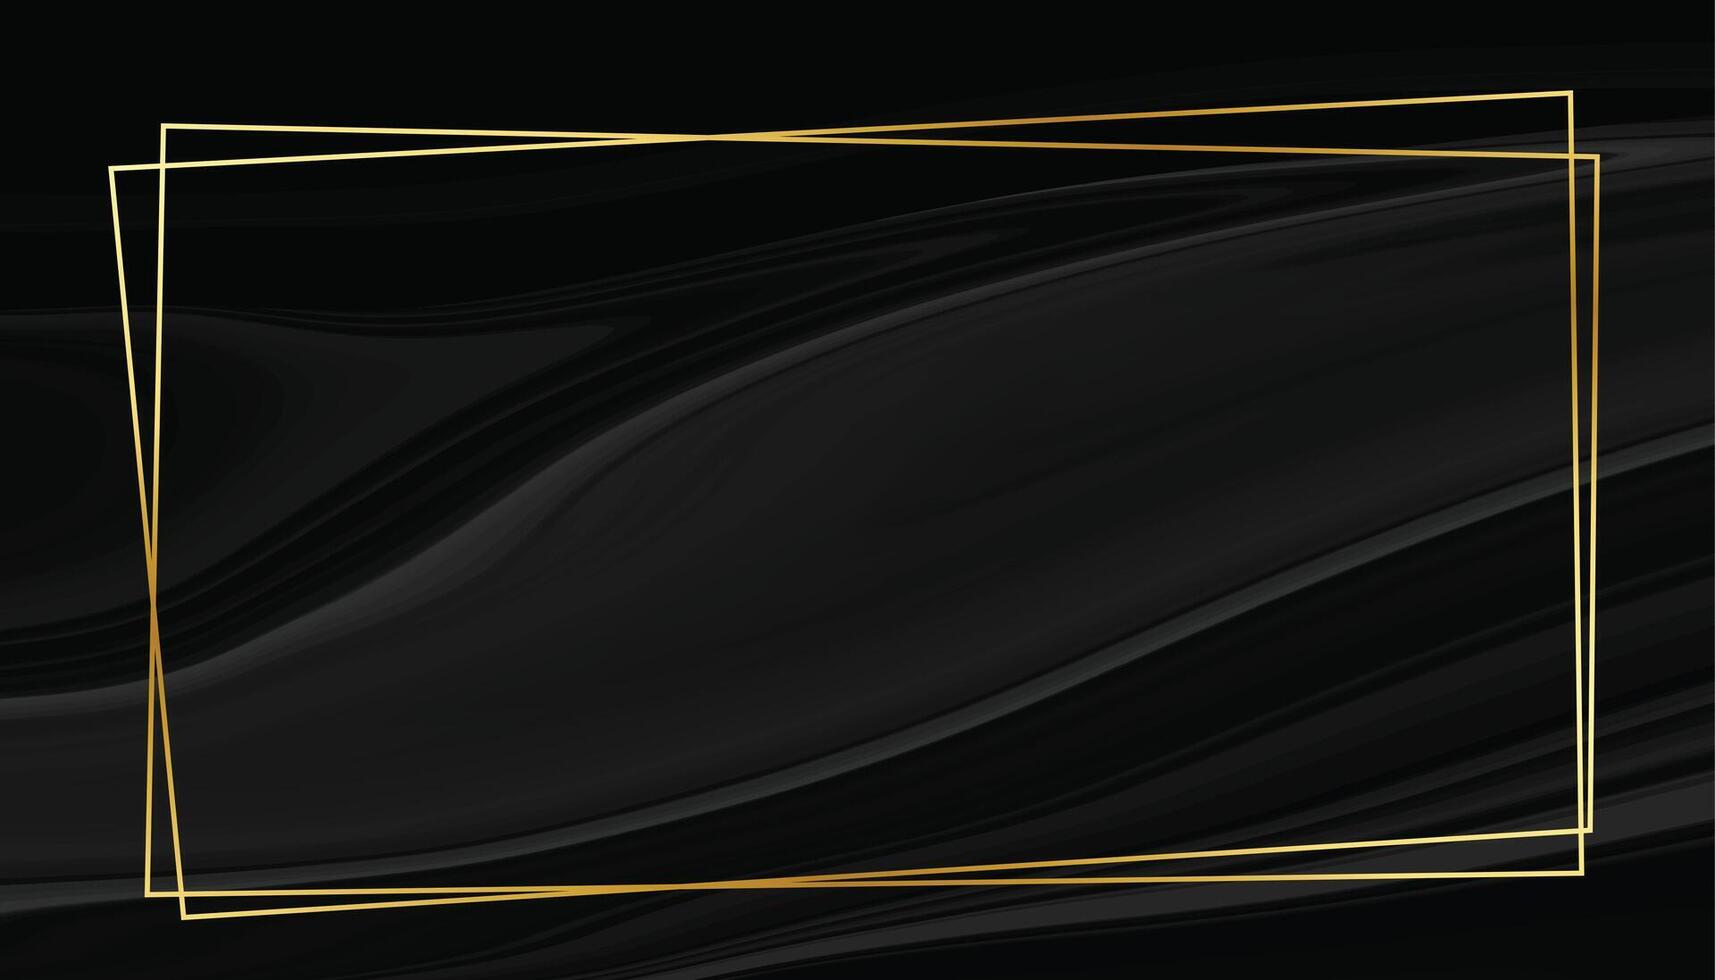 schwarzer marmorstilhintergrund mit goldenem rahmen vektor